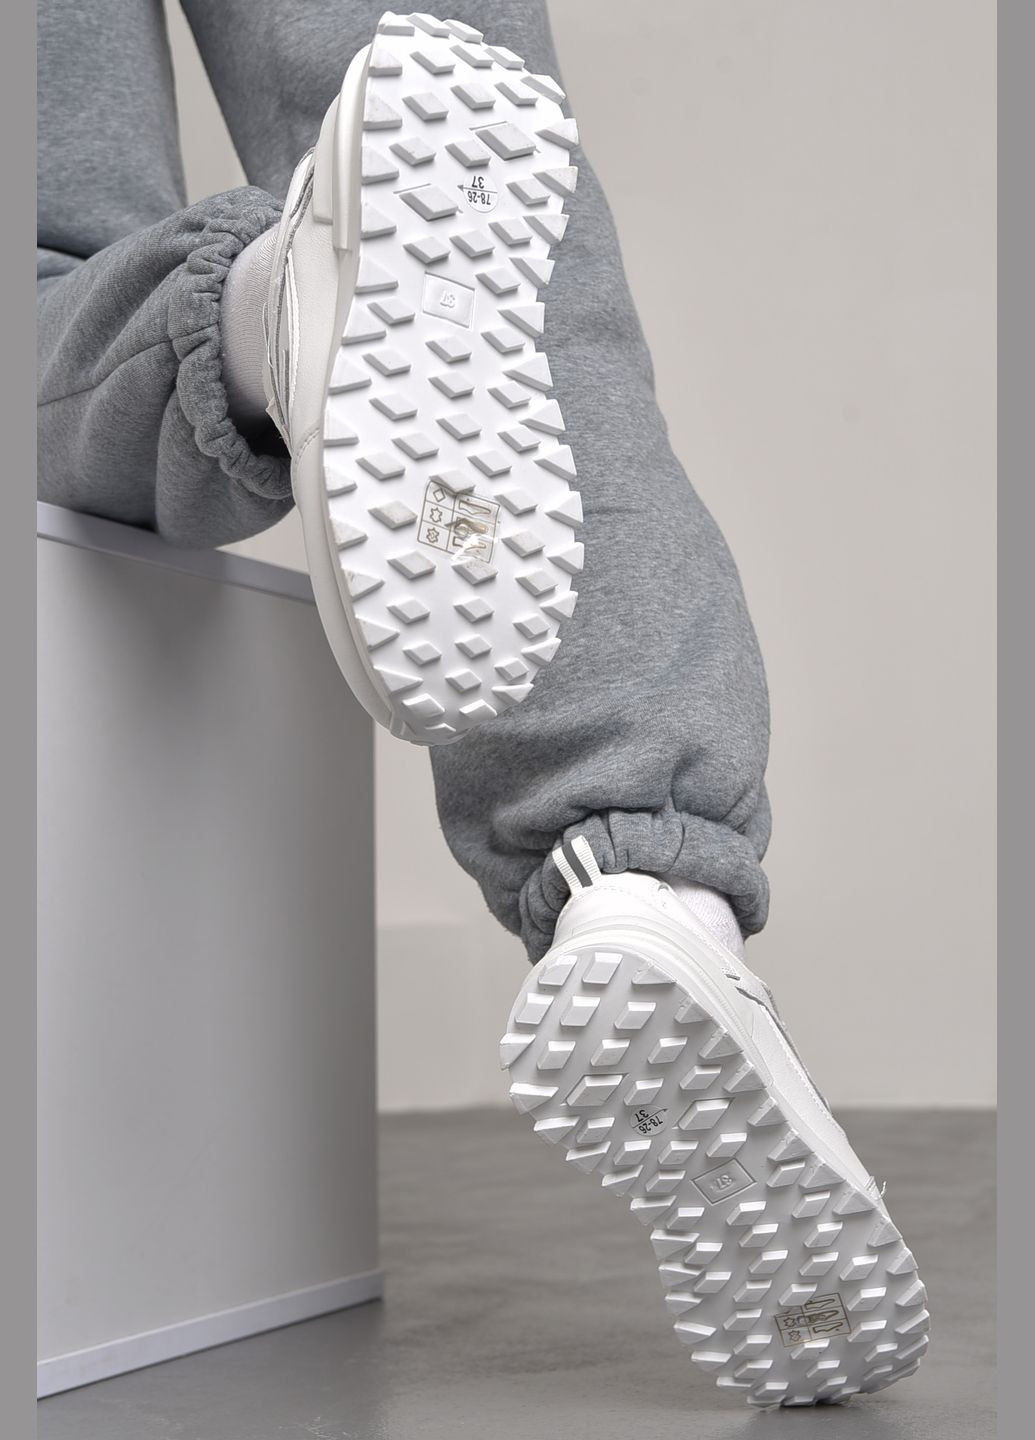 Белые демисезонные кроссовки женские натуральная кожа белого цвета на шнуровке Let's Shop